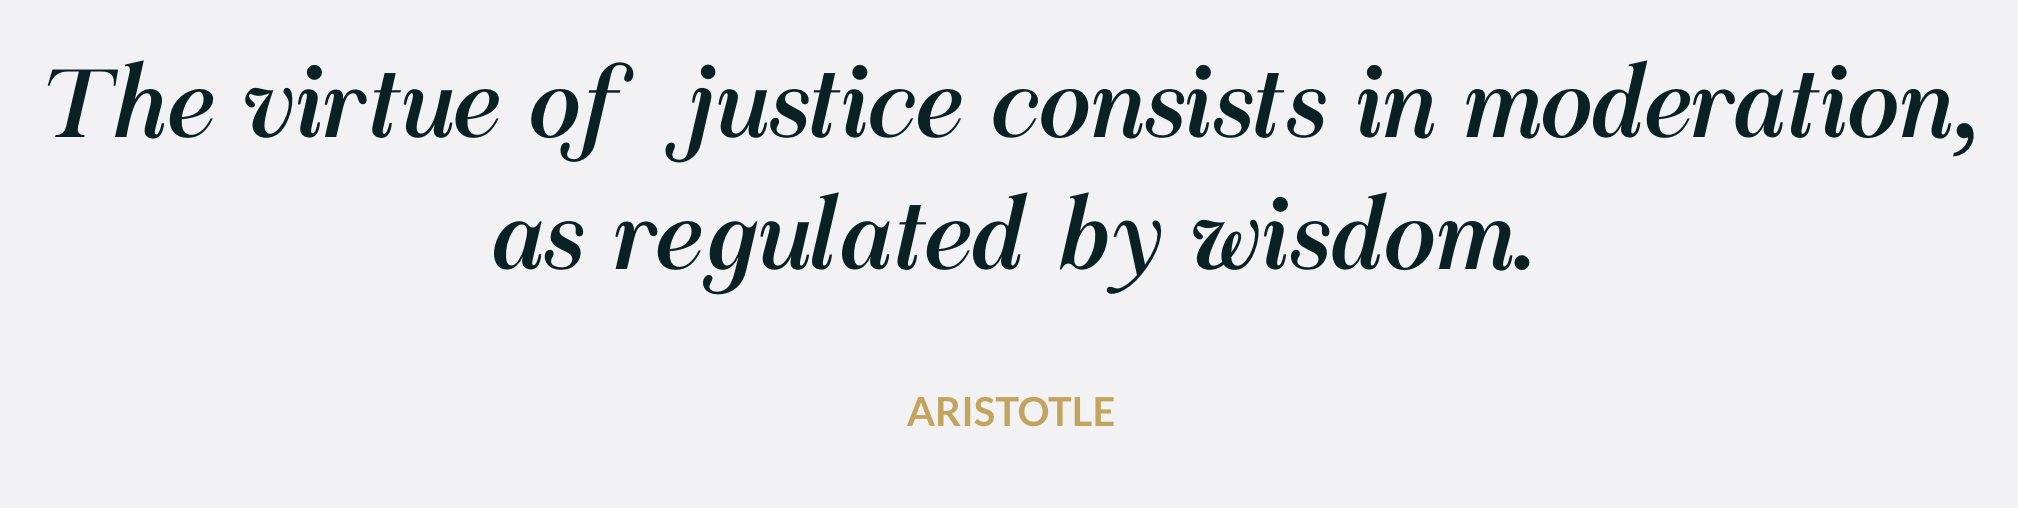 attorney web design - aristotle quote